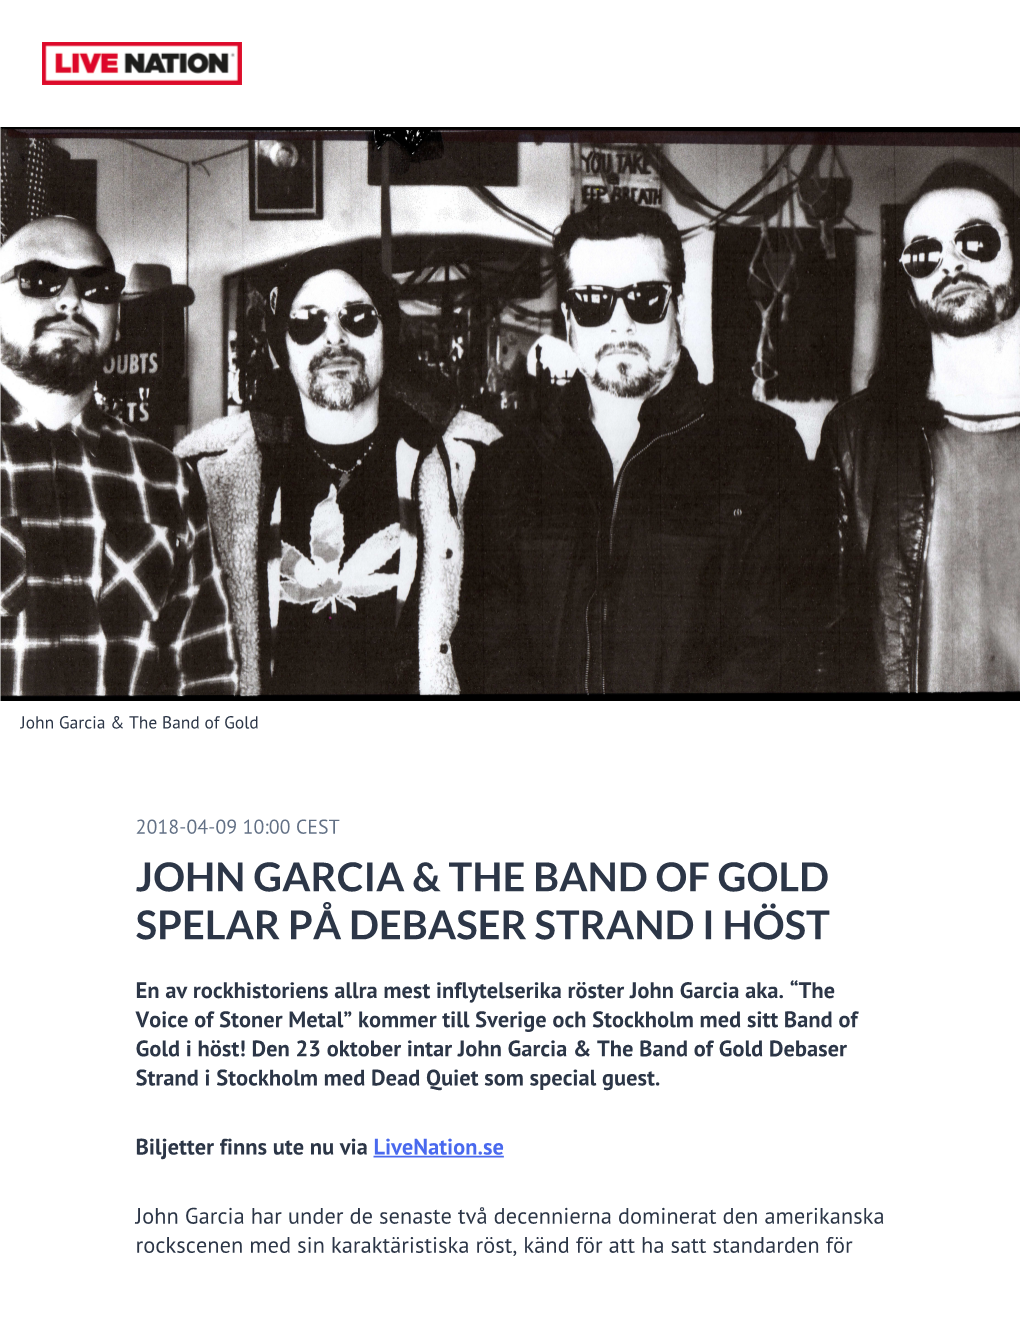 John Garcia & the Band of Gold Spelar På Debaser